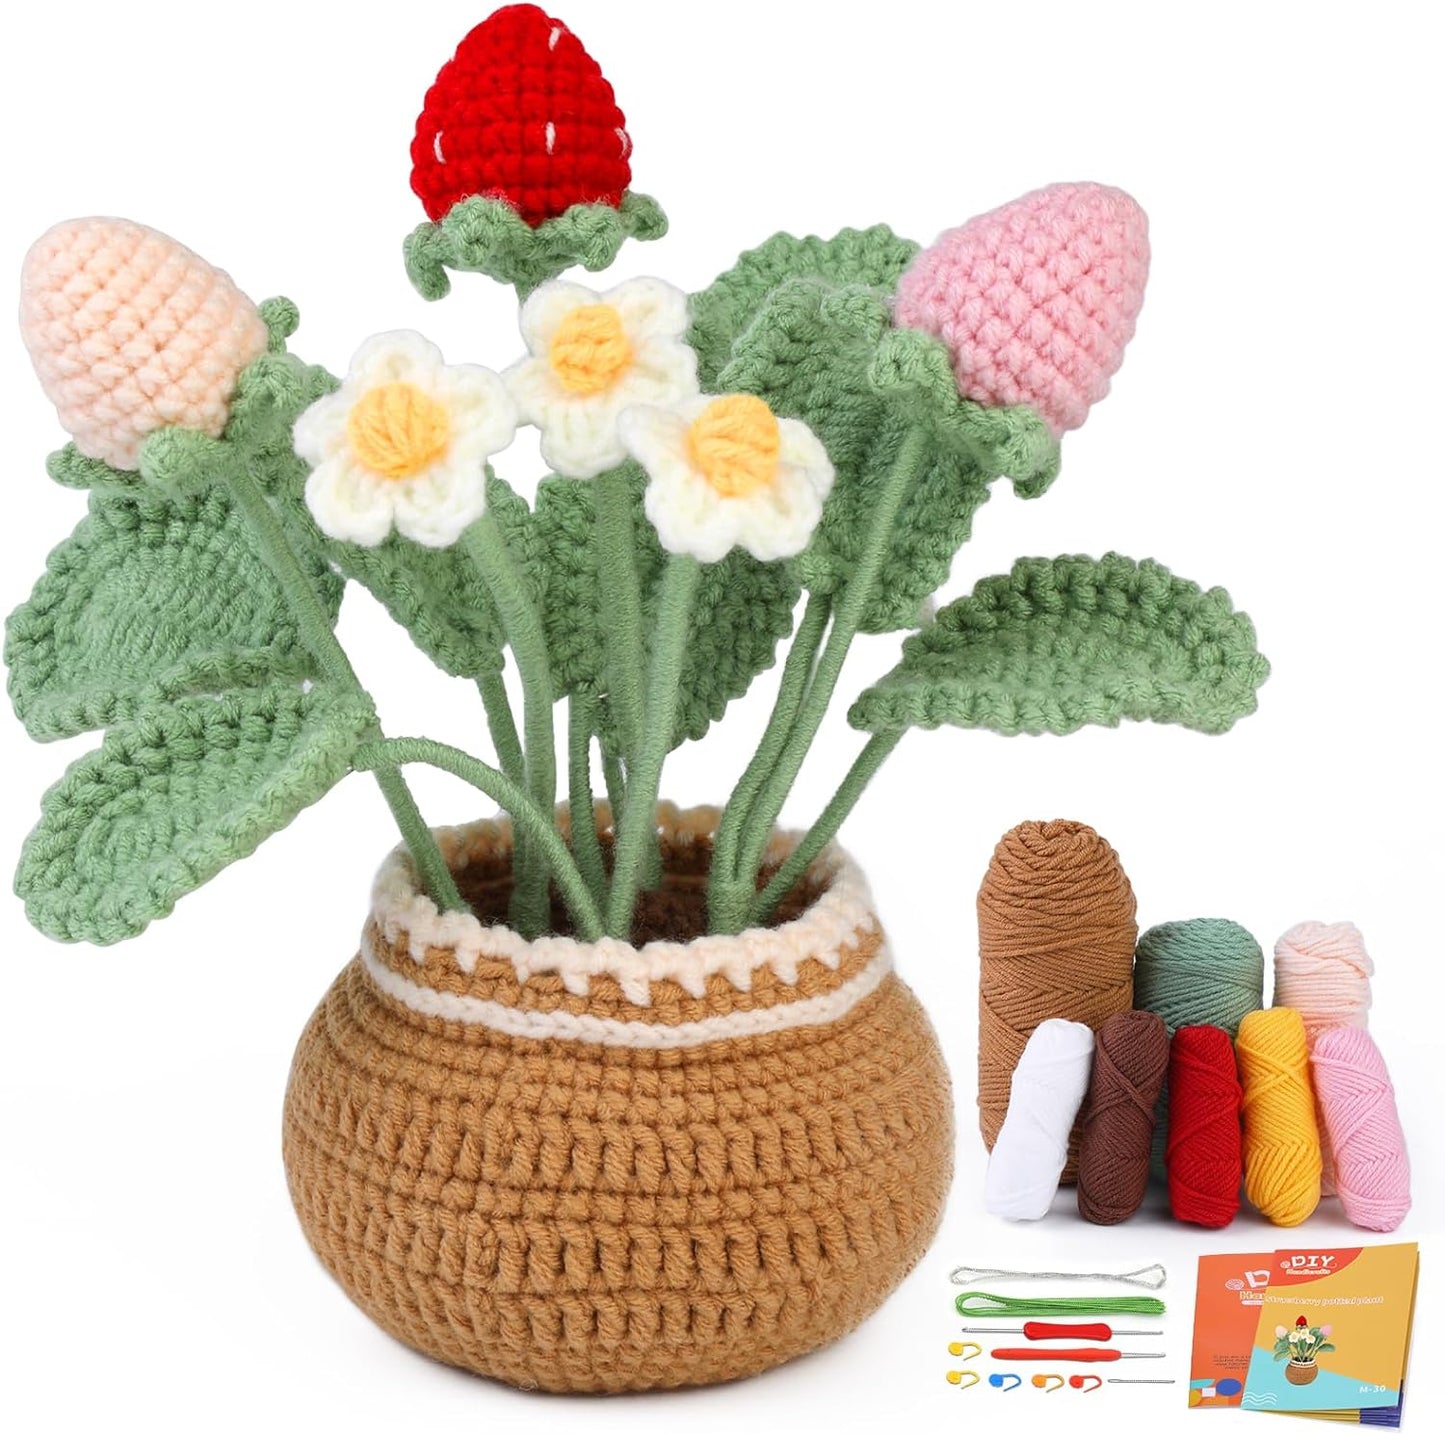 Crochet Kit for Beginners,Crochet Kit Beginner Crochet Starter Kit for Complete Beginners Adults, Crocheting Knitting Kit with Step-By-Step Video Tutorials